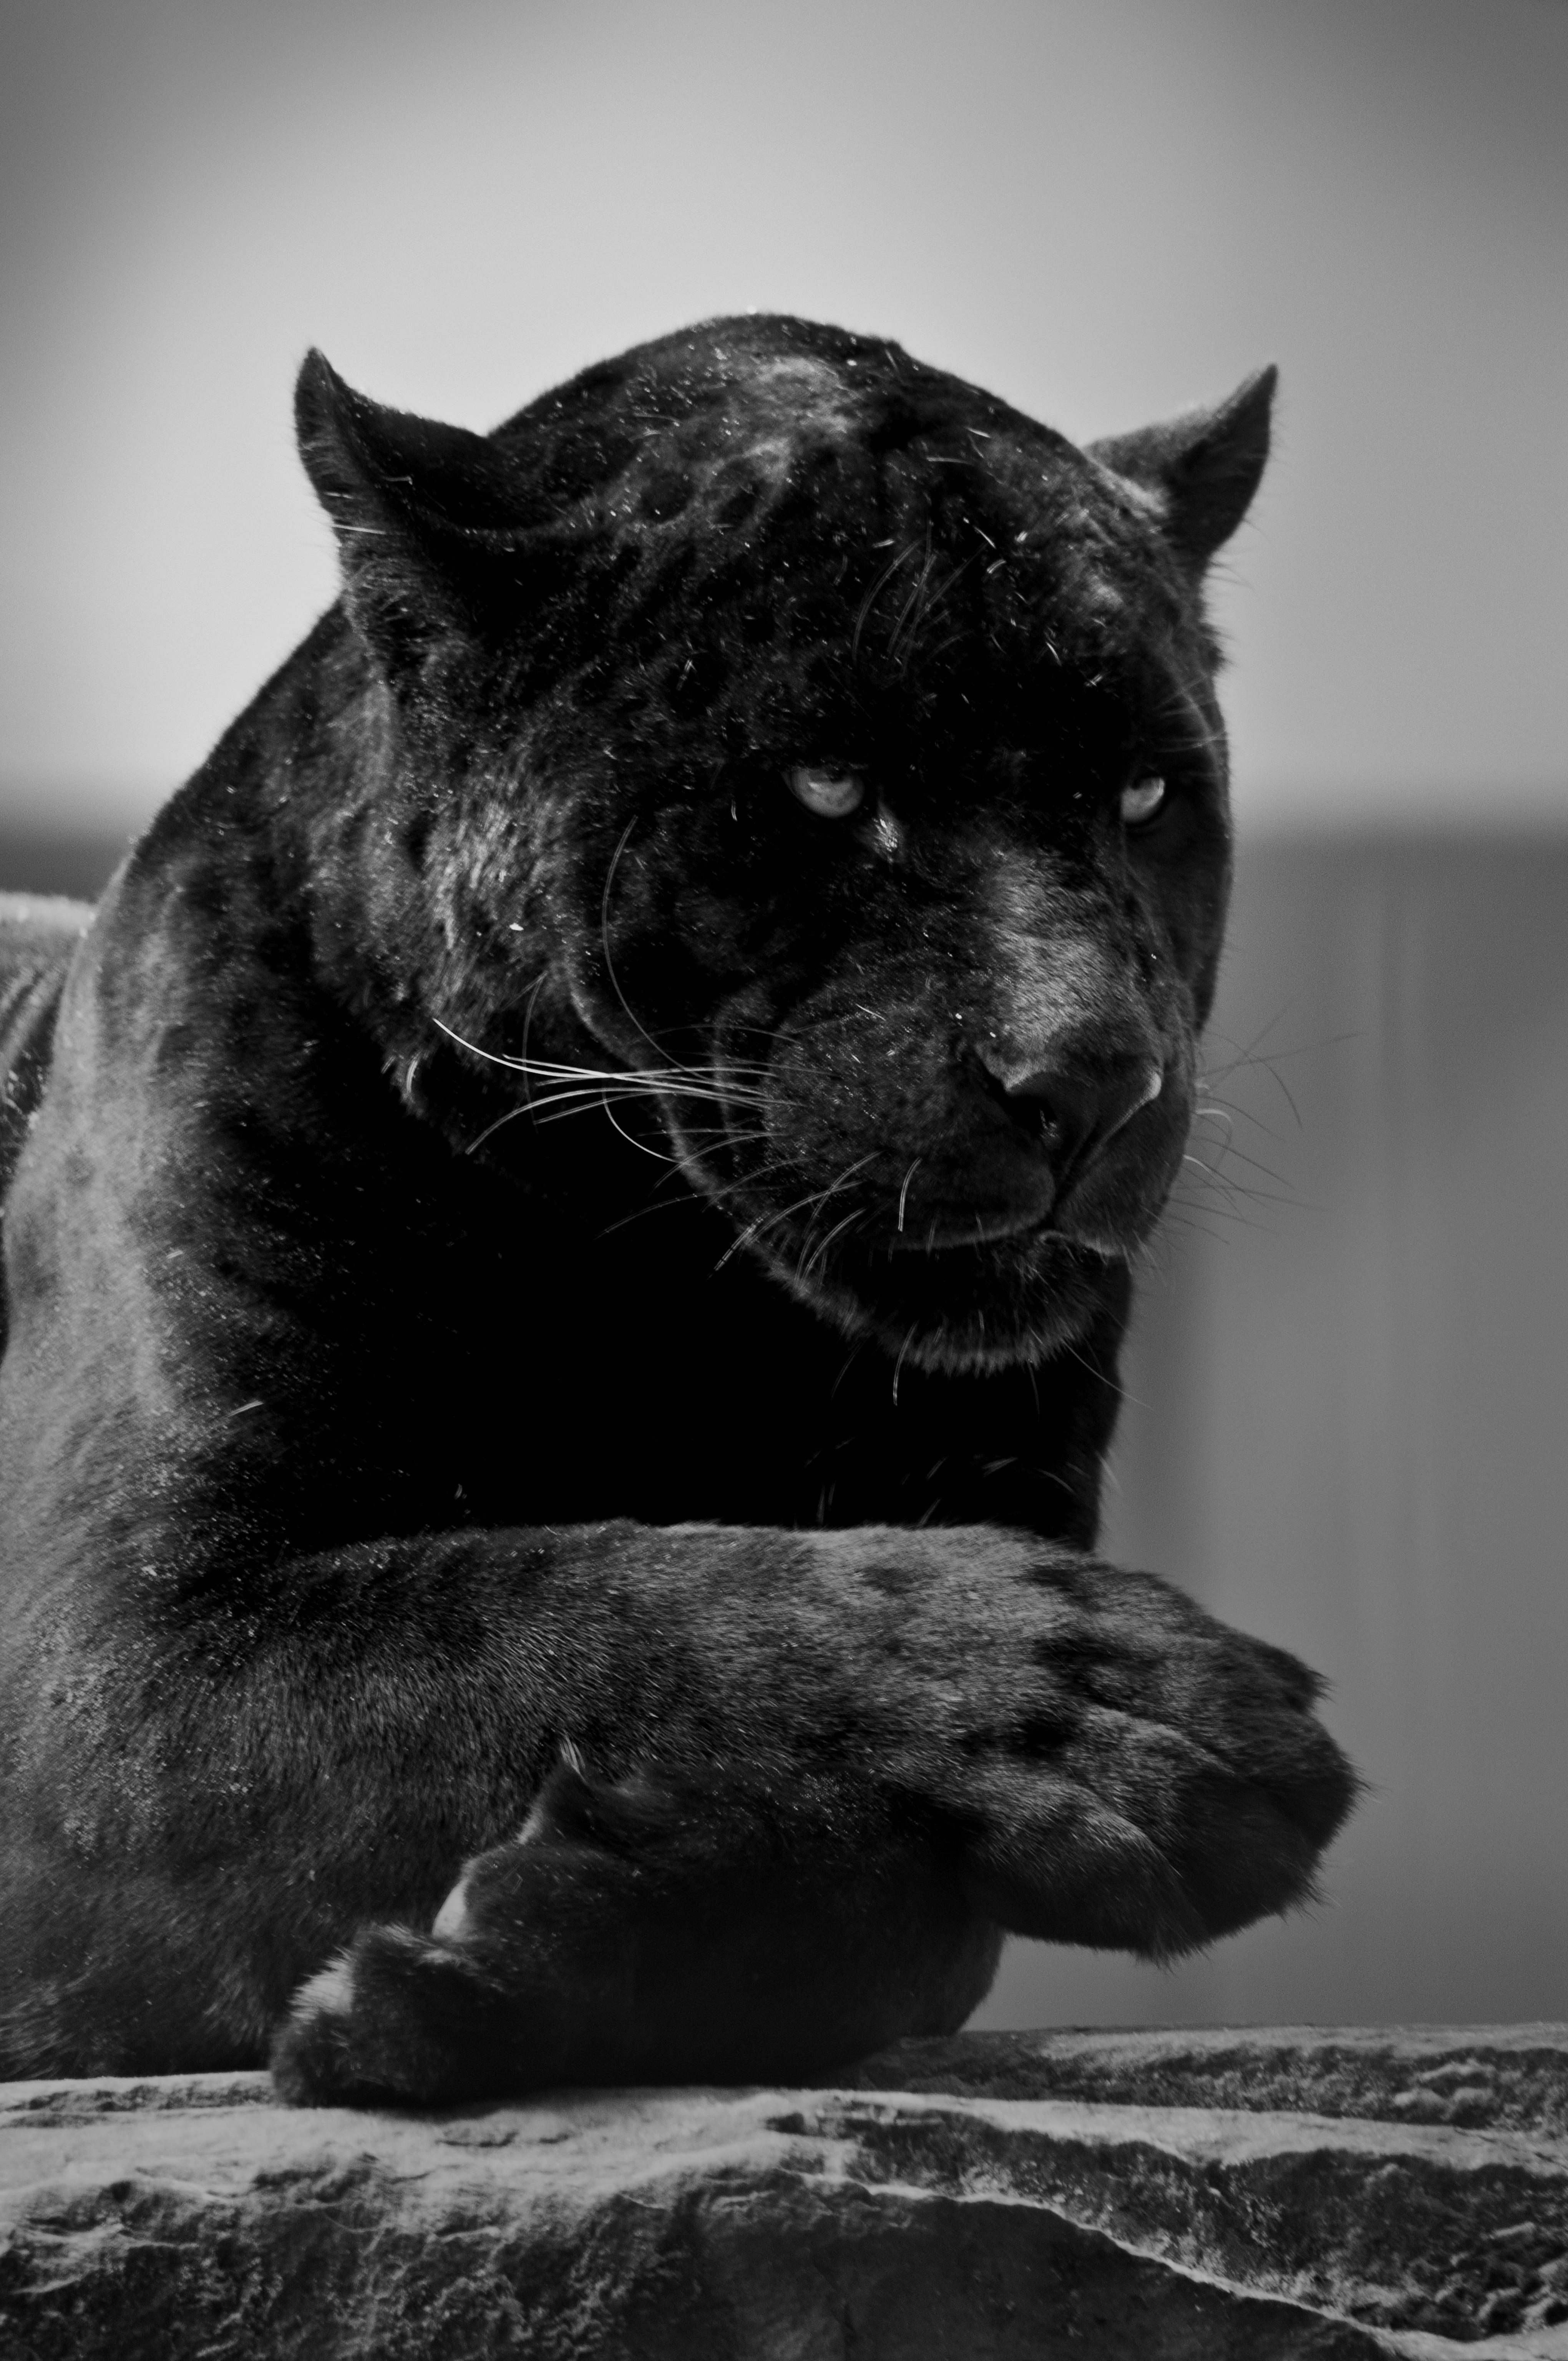 Black Jaguar Animal Wallpaper Iphone